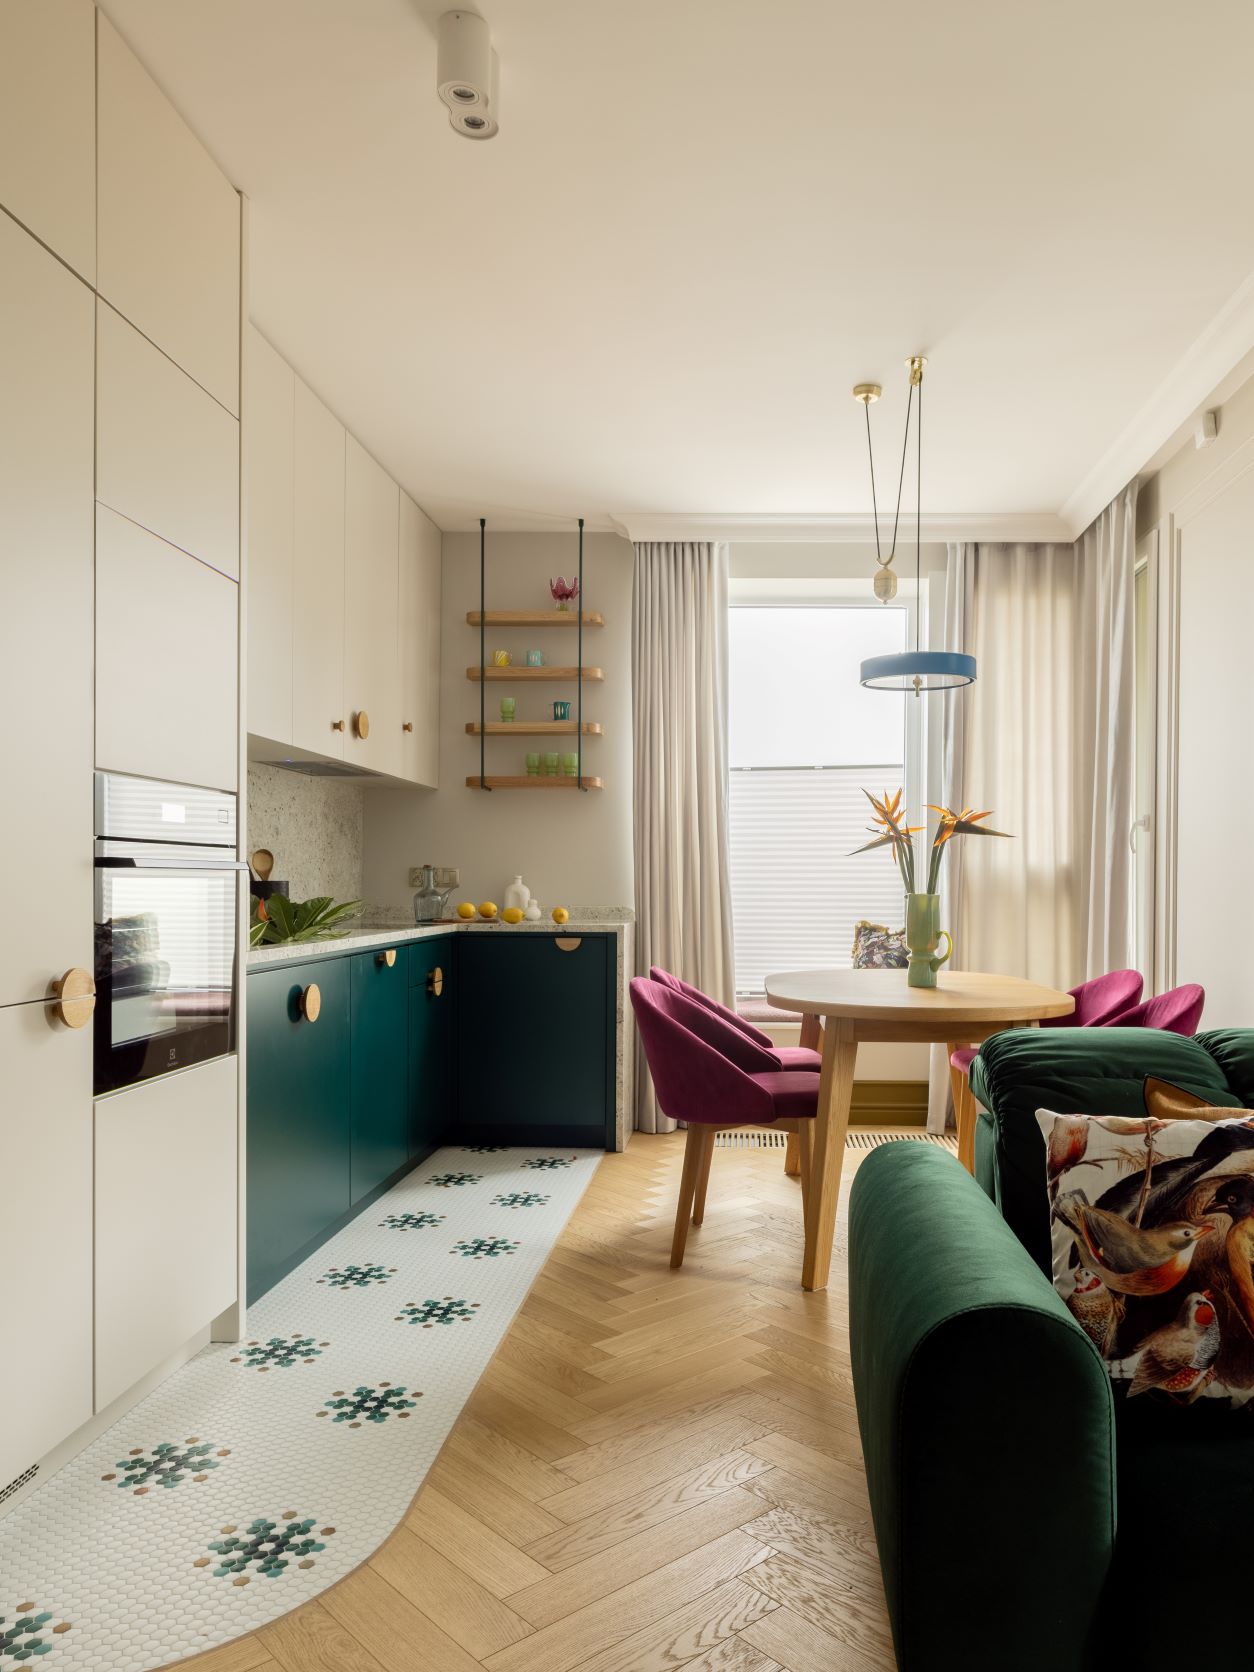 Zielona kuchnia z jadalnią w 65-metrowym mieszkaniu. Projekt wnętrza Finch Studio. Zdjęcia i stylizacja Aleksandra Dermont